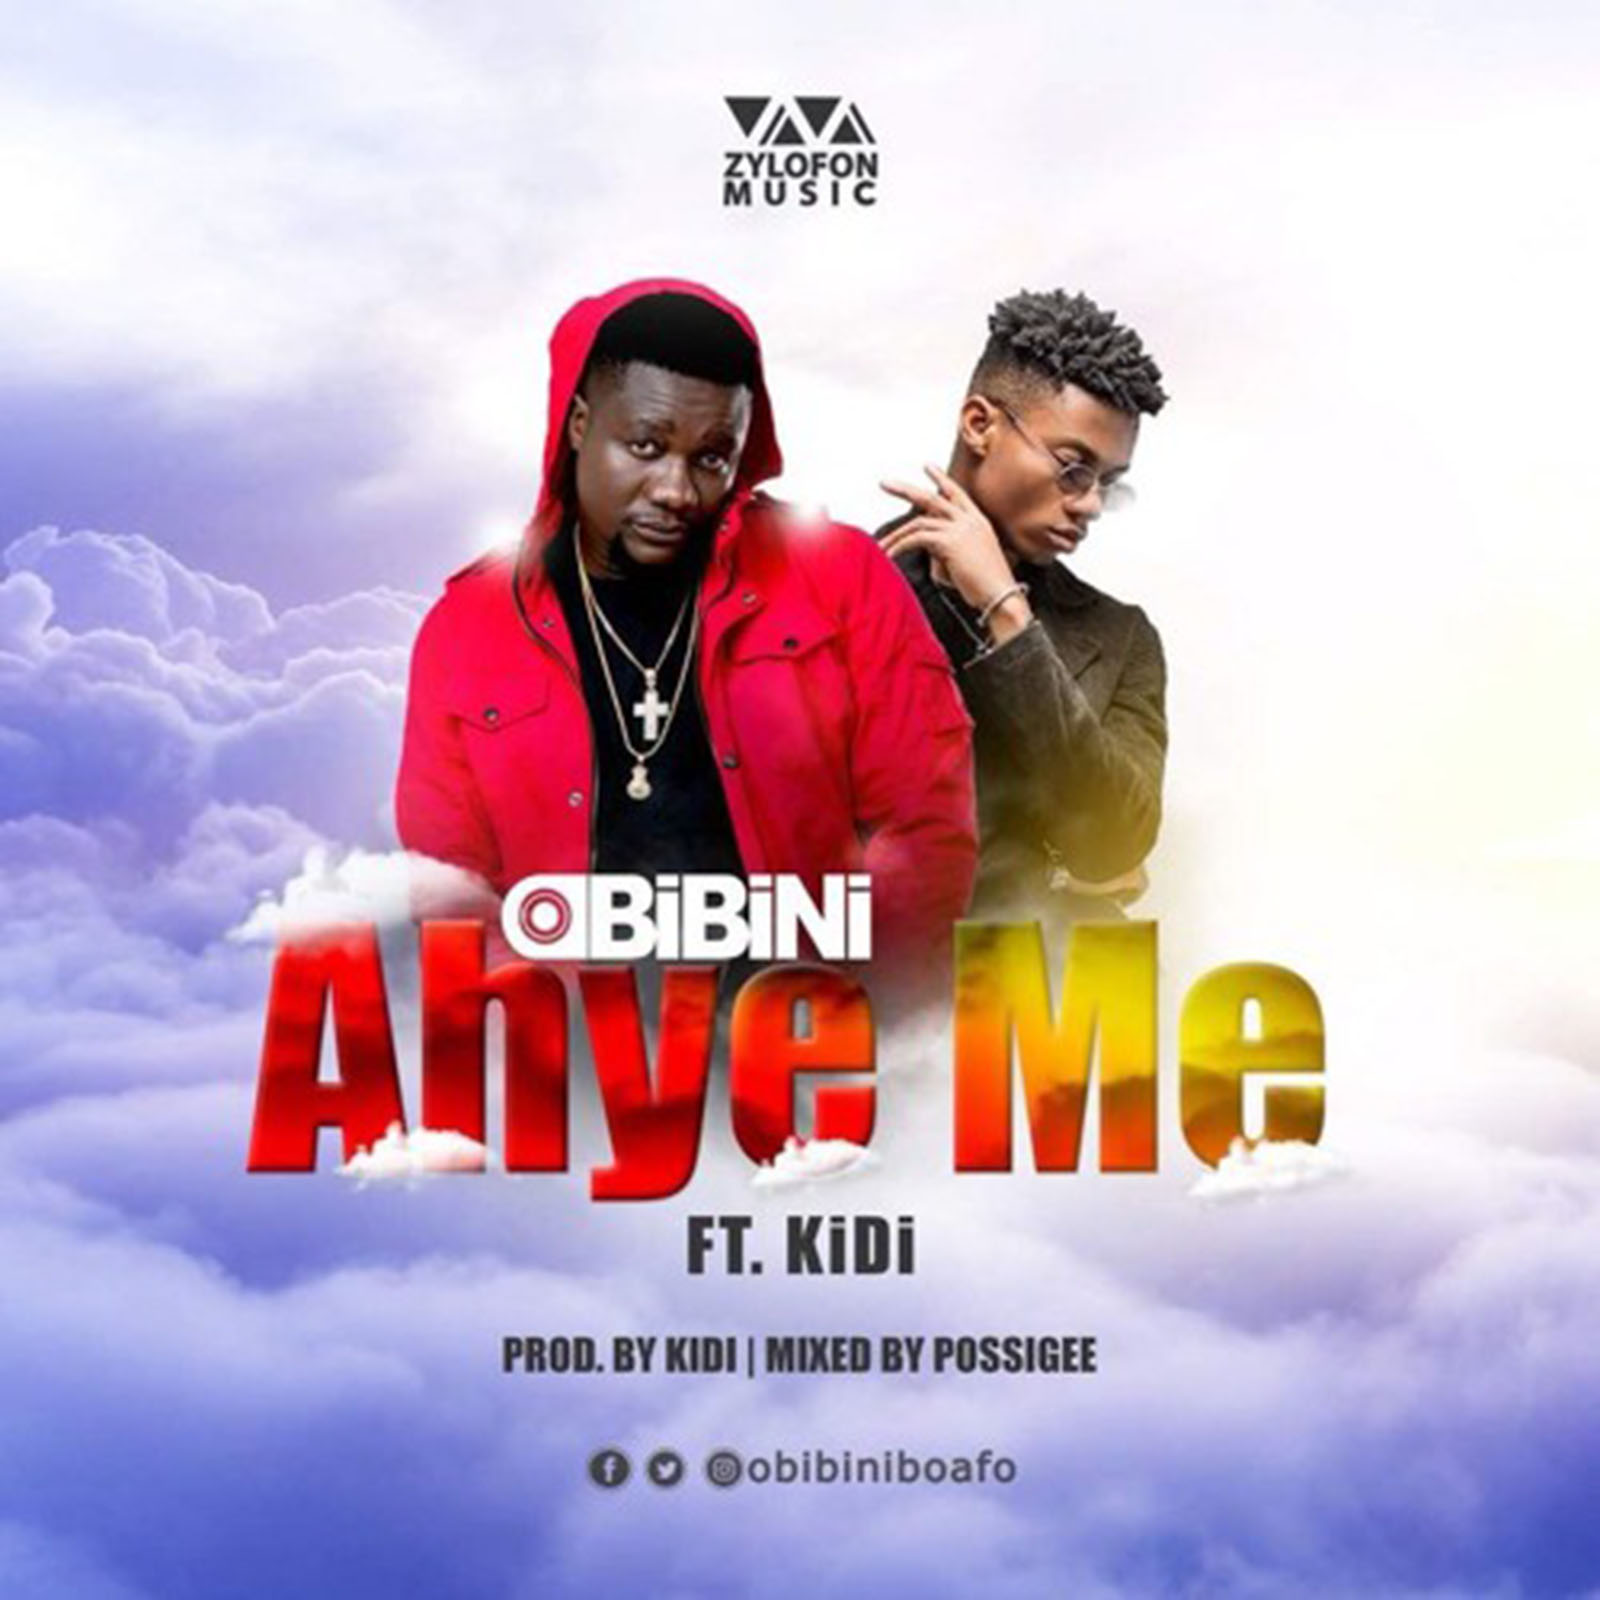 Ahye Me by Obibini feat. KiDi